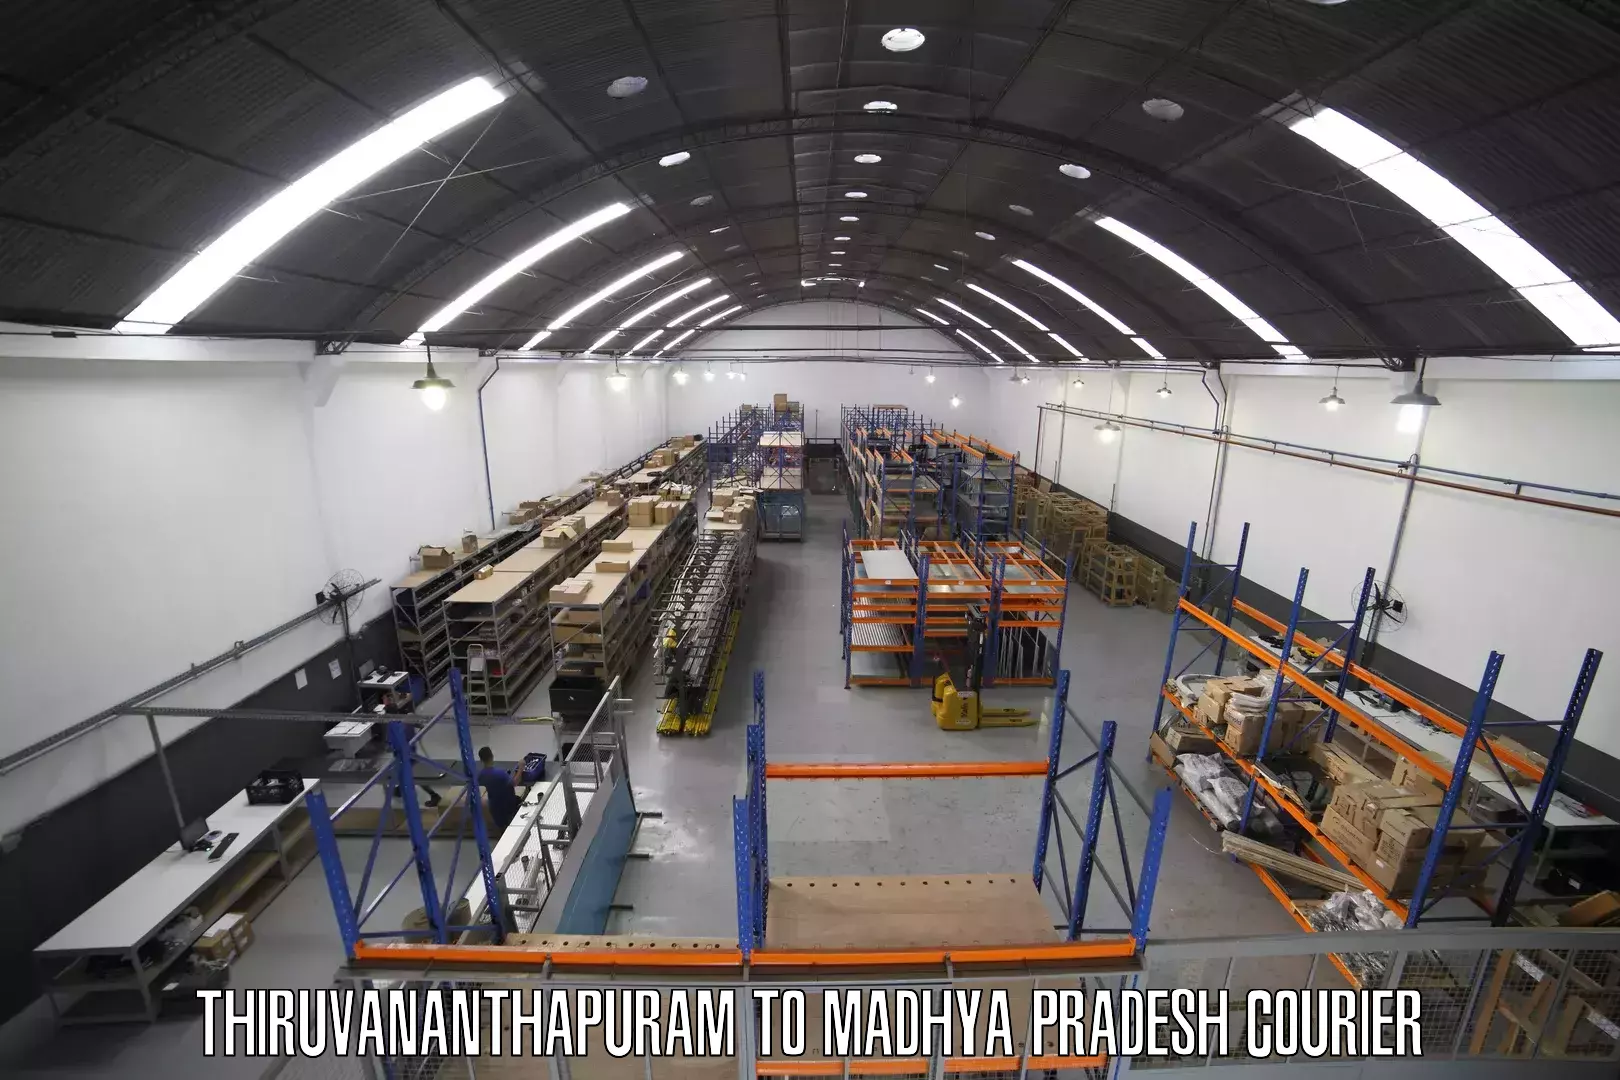 User-friendly courier app Thiruvananthapuram to Bhind